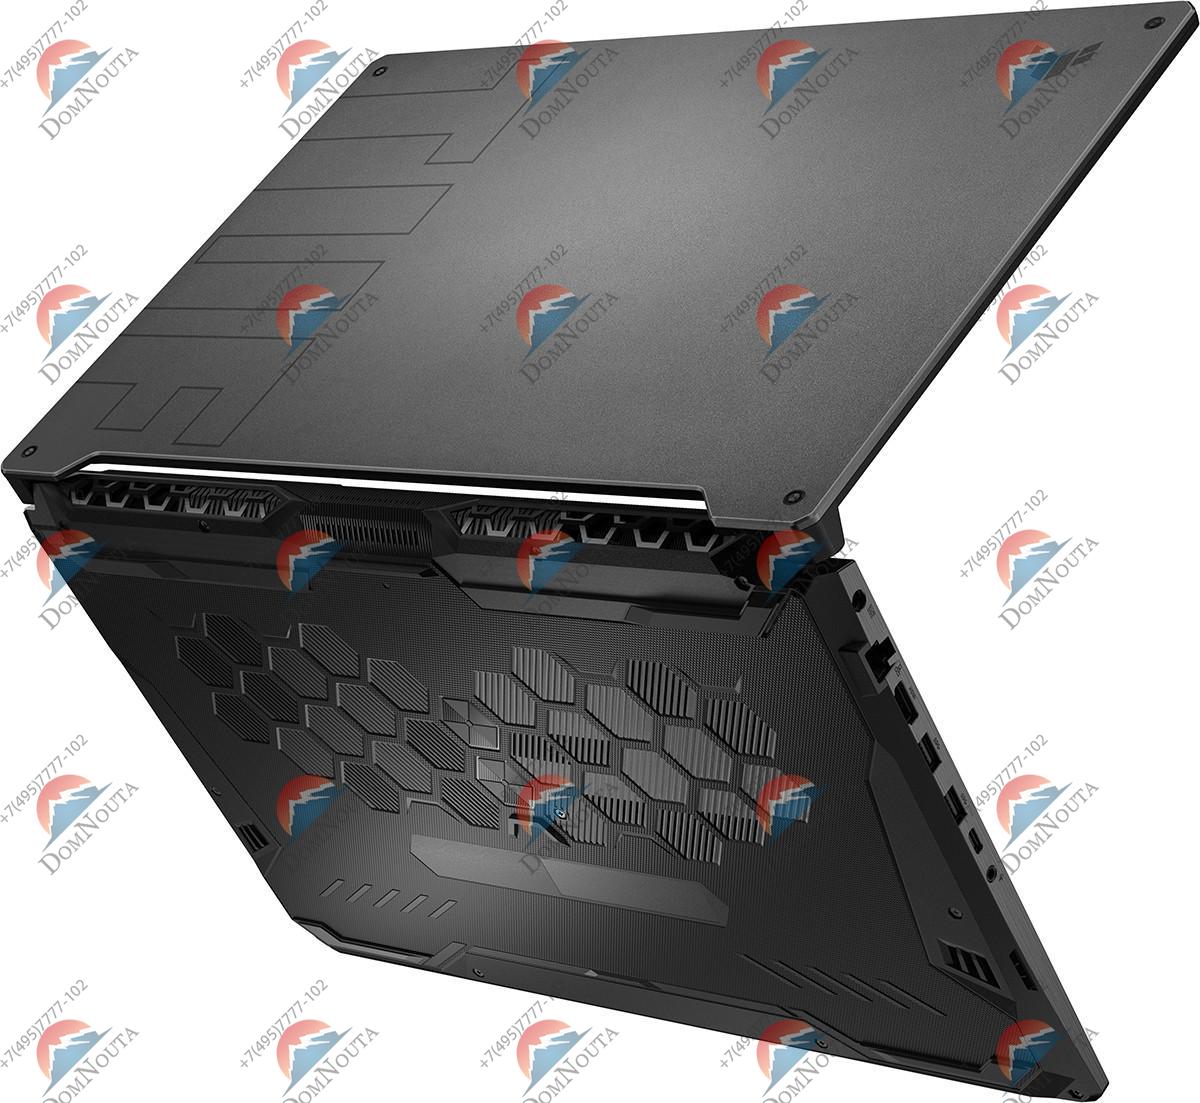 Ноутбук Asus TUF Gaming FX706HEB